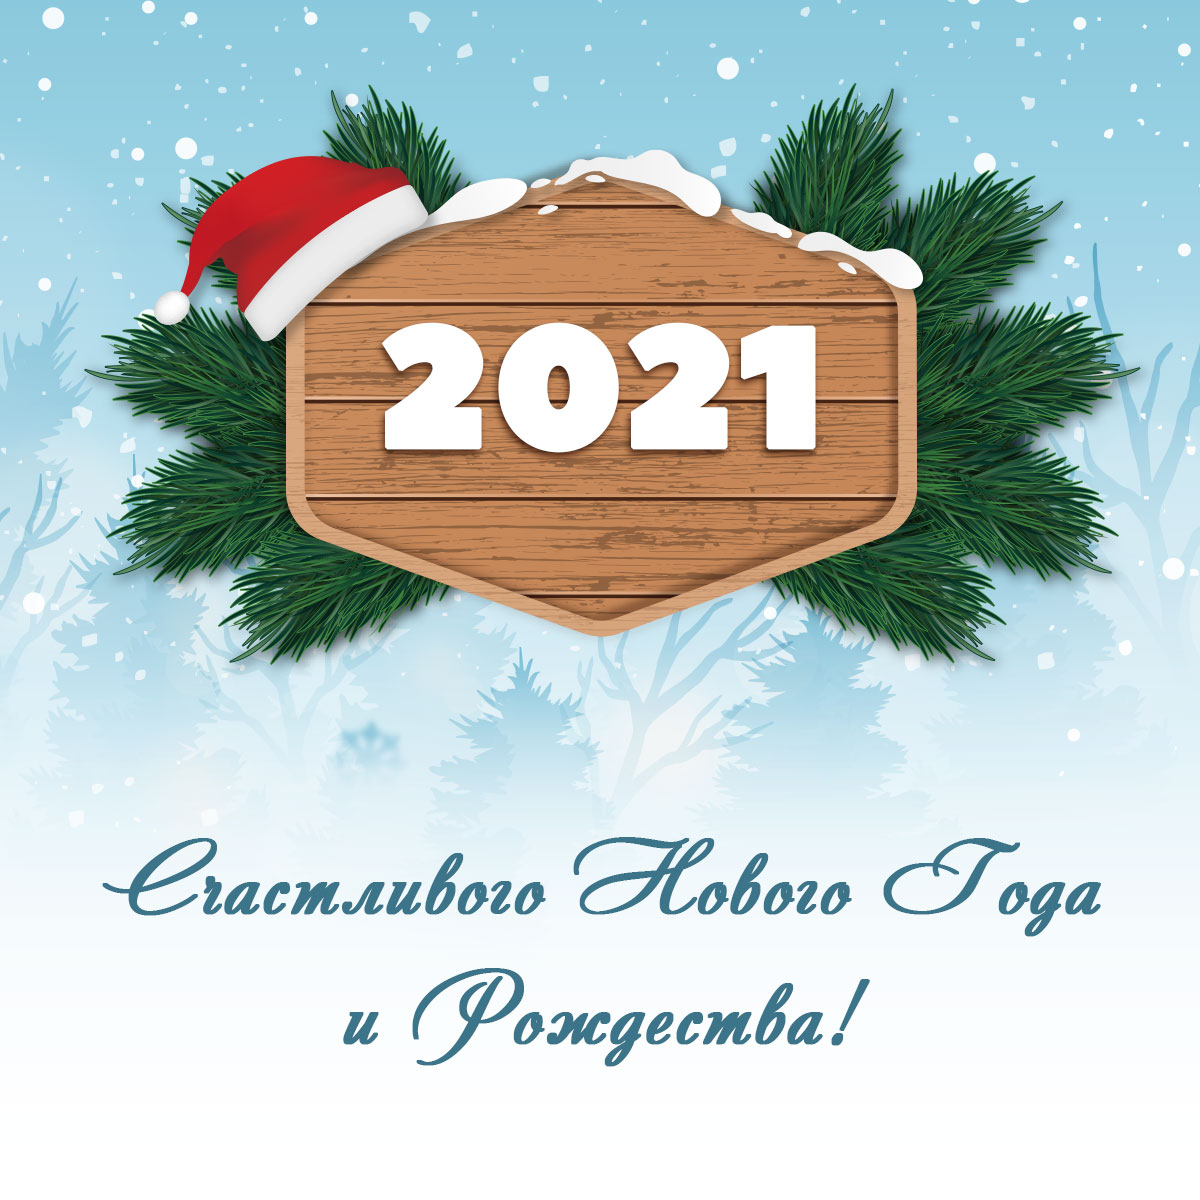 Голубая открытка с новым годом и рождеством 2021с еловыми ветками.